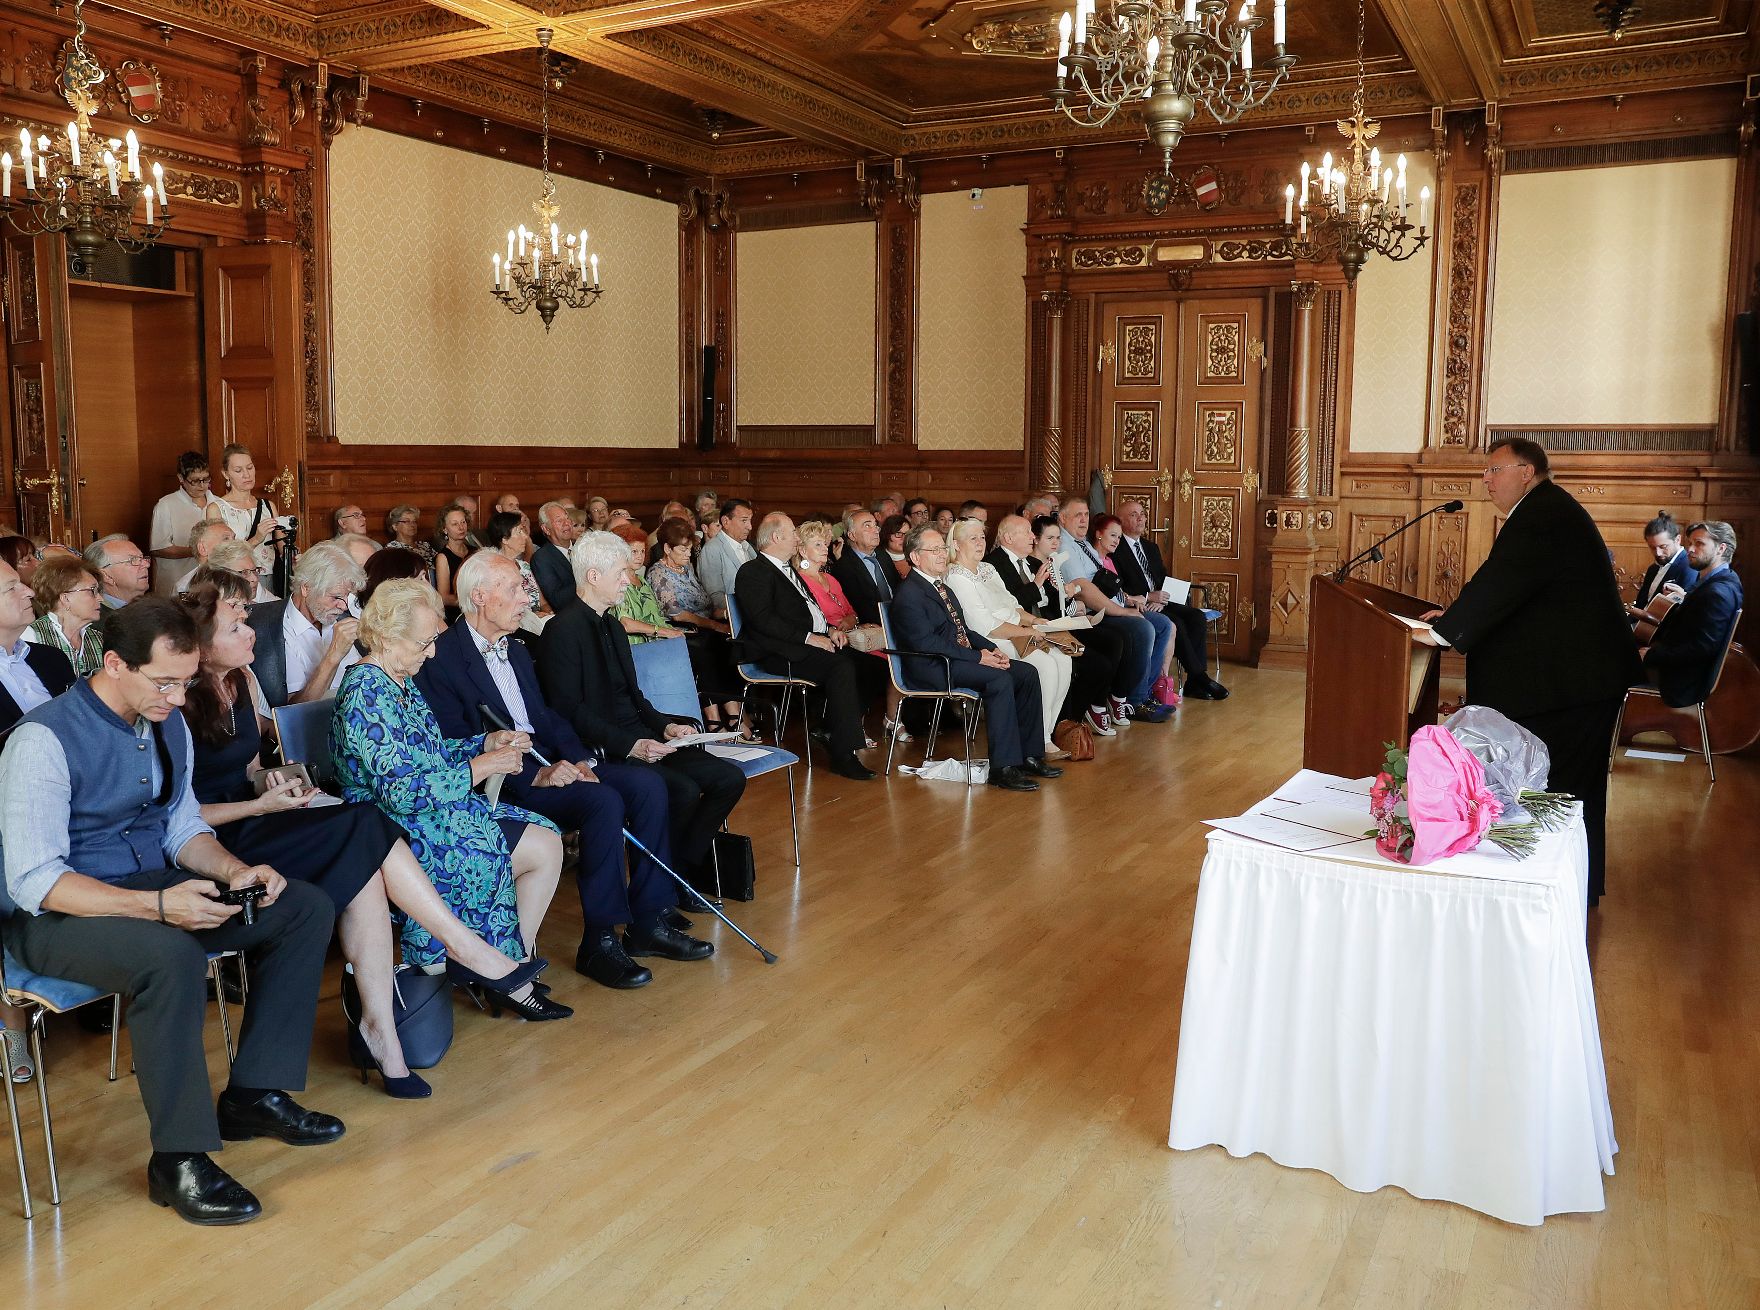 Am 4. Juli 2018 wurden die Urkunde über die Verleihung des Berufstitels Professor an Kurt Philipp und das Große Ehrenzeichen für Verdienste um die Republik Österreich an Franz Basdera überreicht. Im Bild Reinhold Hohengartner bei der Begrüßung.